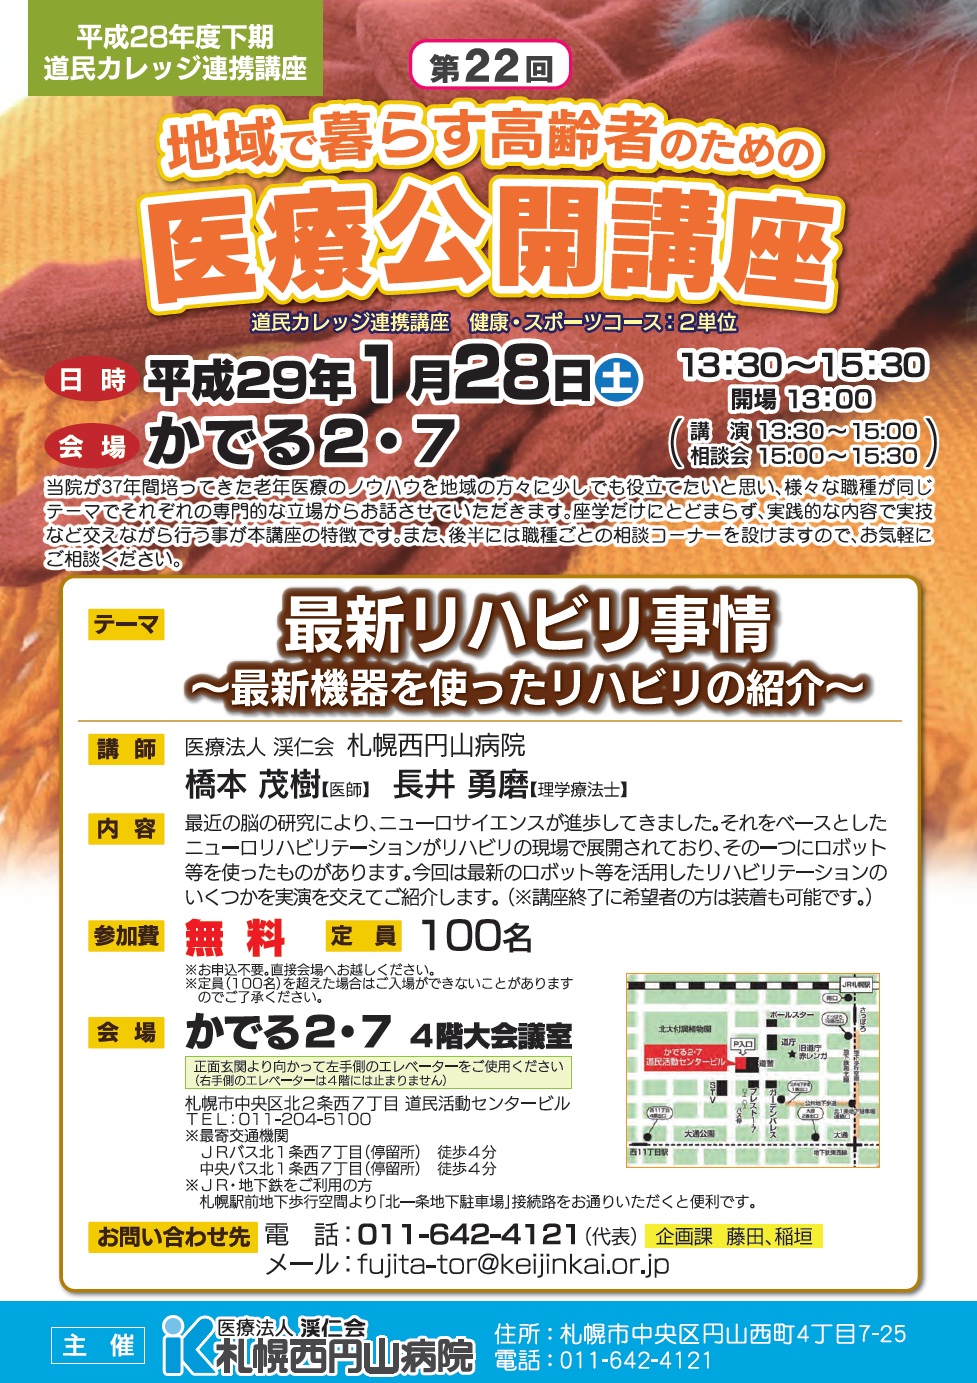 札幌西円山病院 新着情報 第22回医療公開講座 1 28 開催のご案内